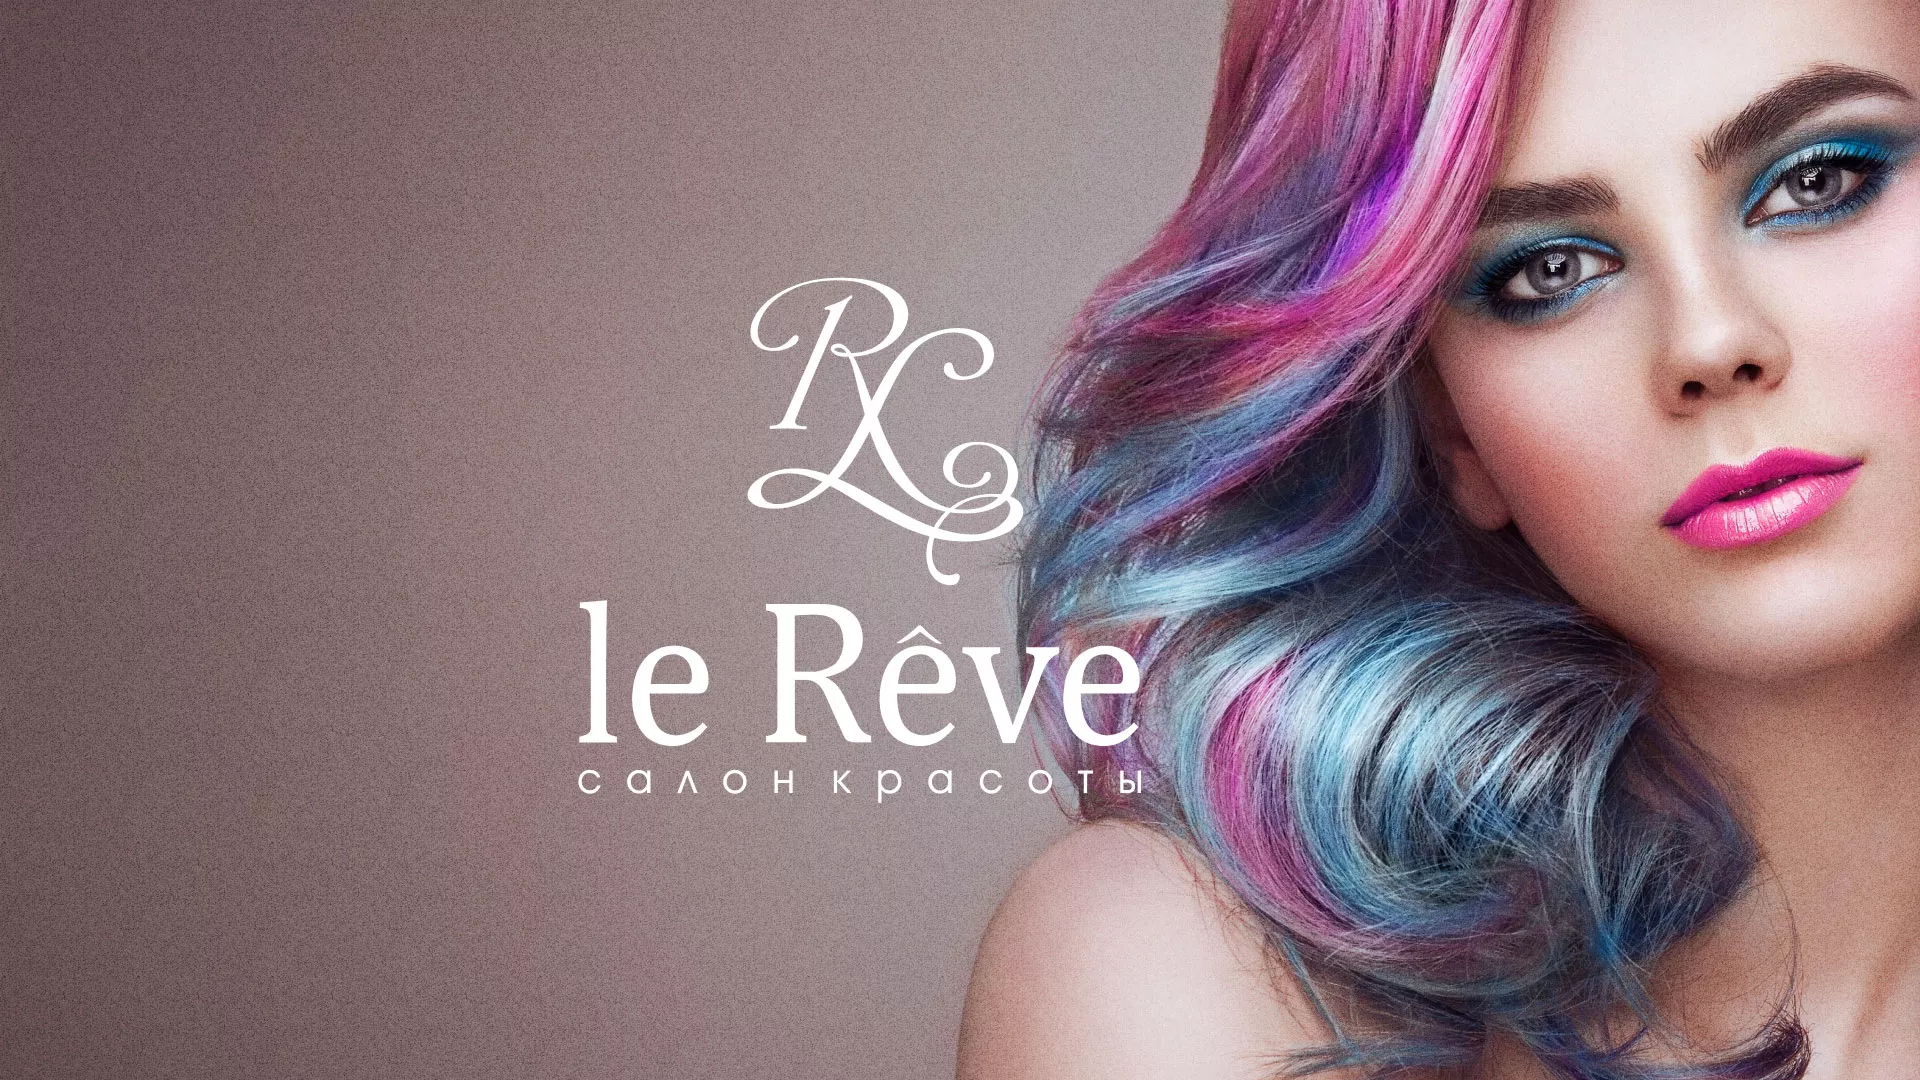 Создание сайта для салона красоты «Le Reve» в Кологриве